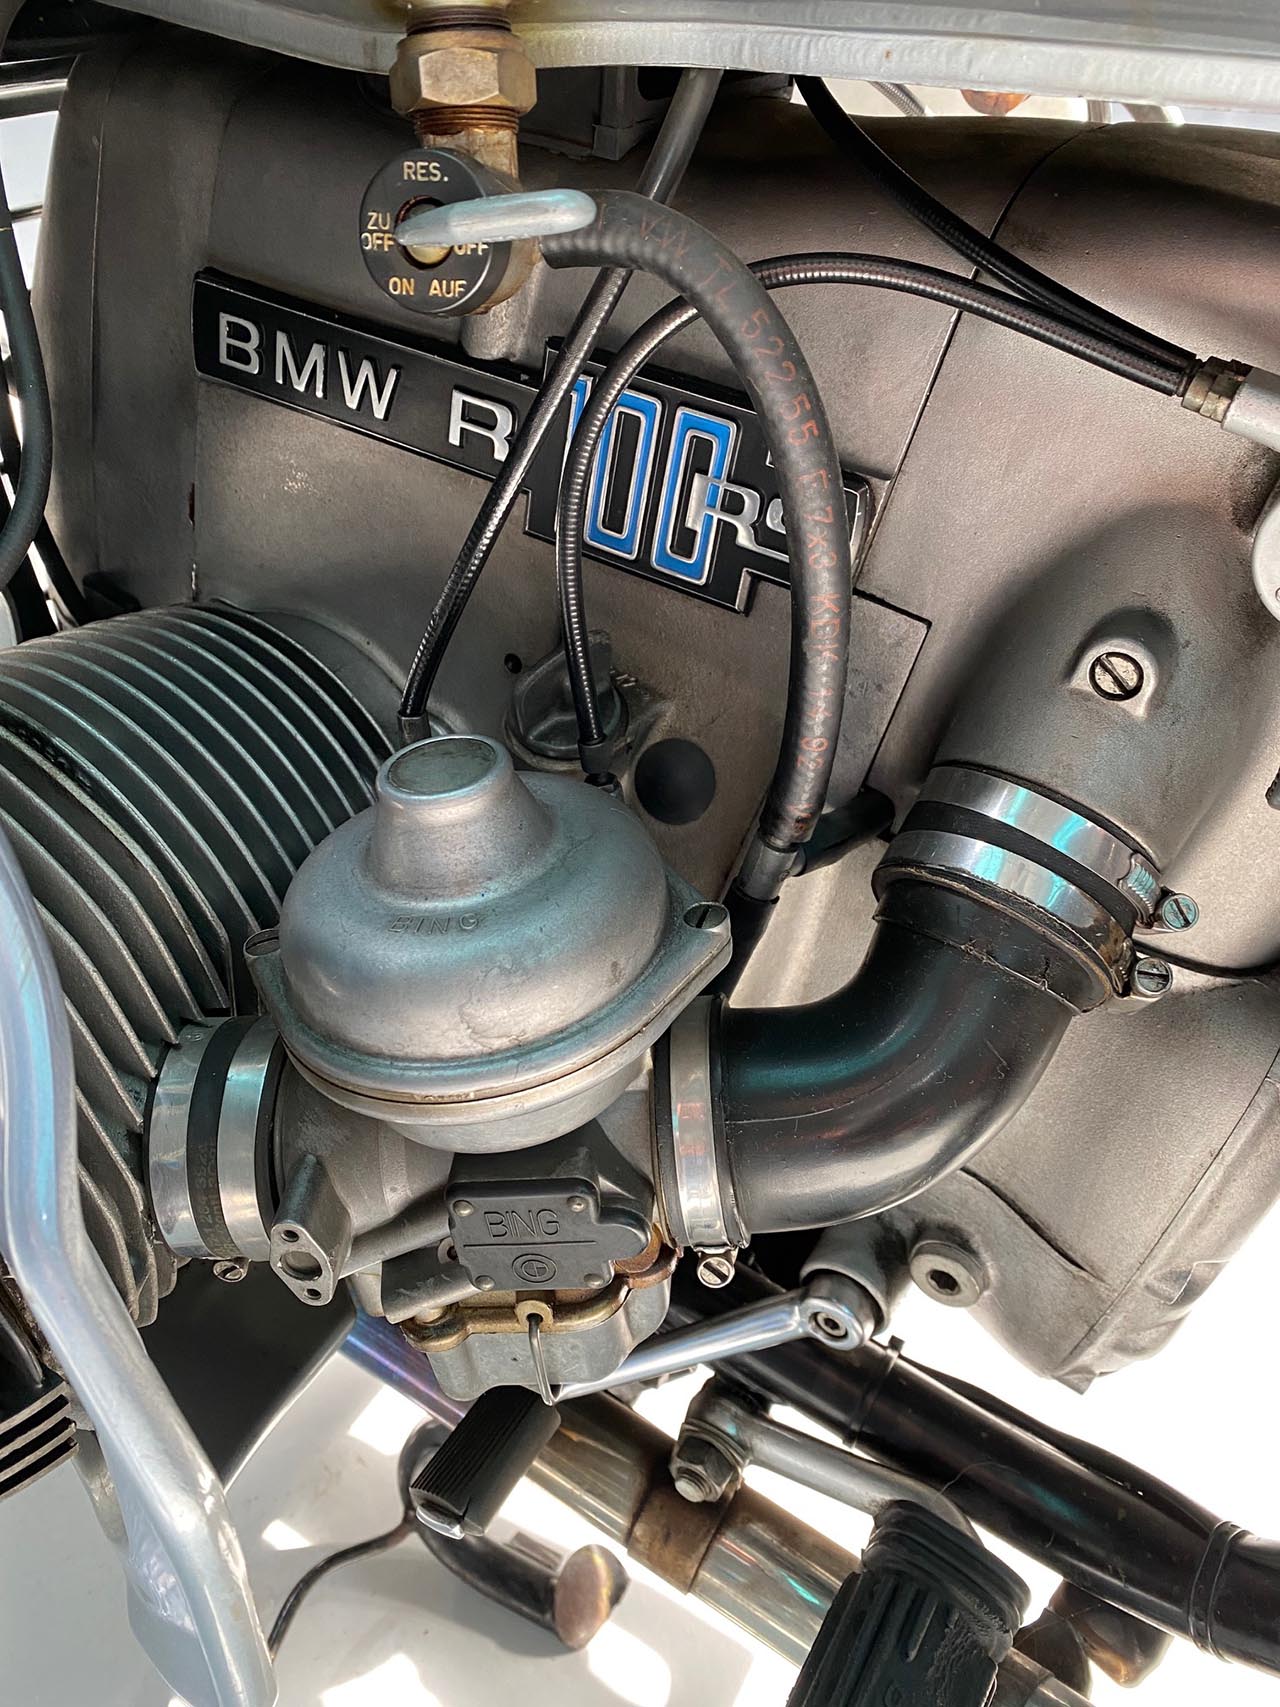 BMW R100RS venta vehículos deportivos clasicos ascari dreams